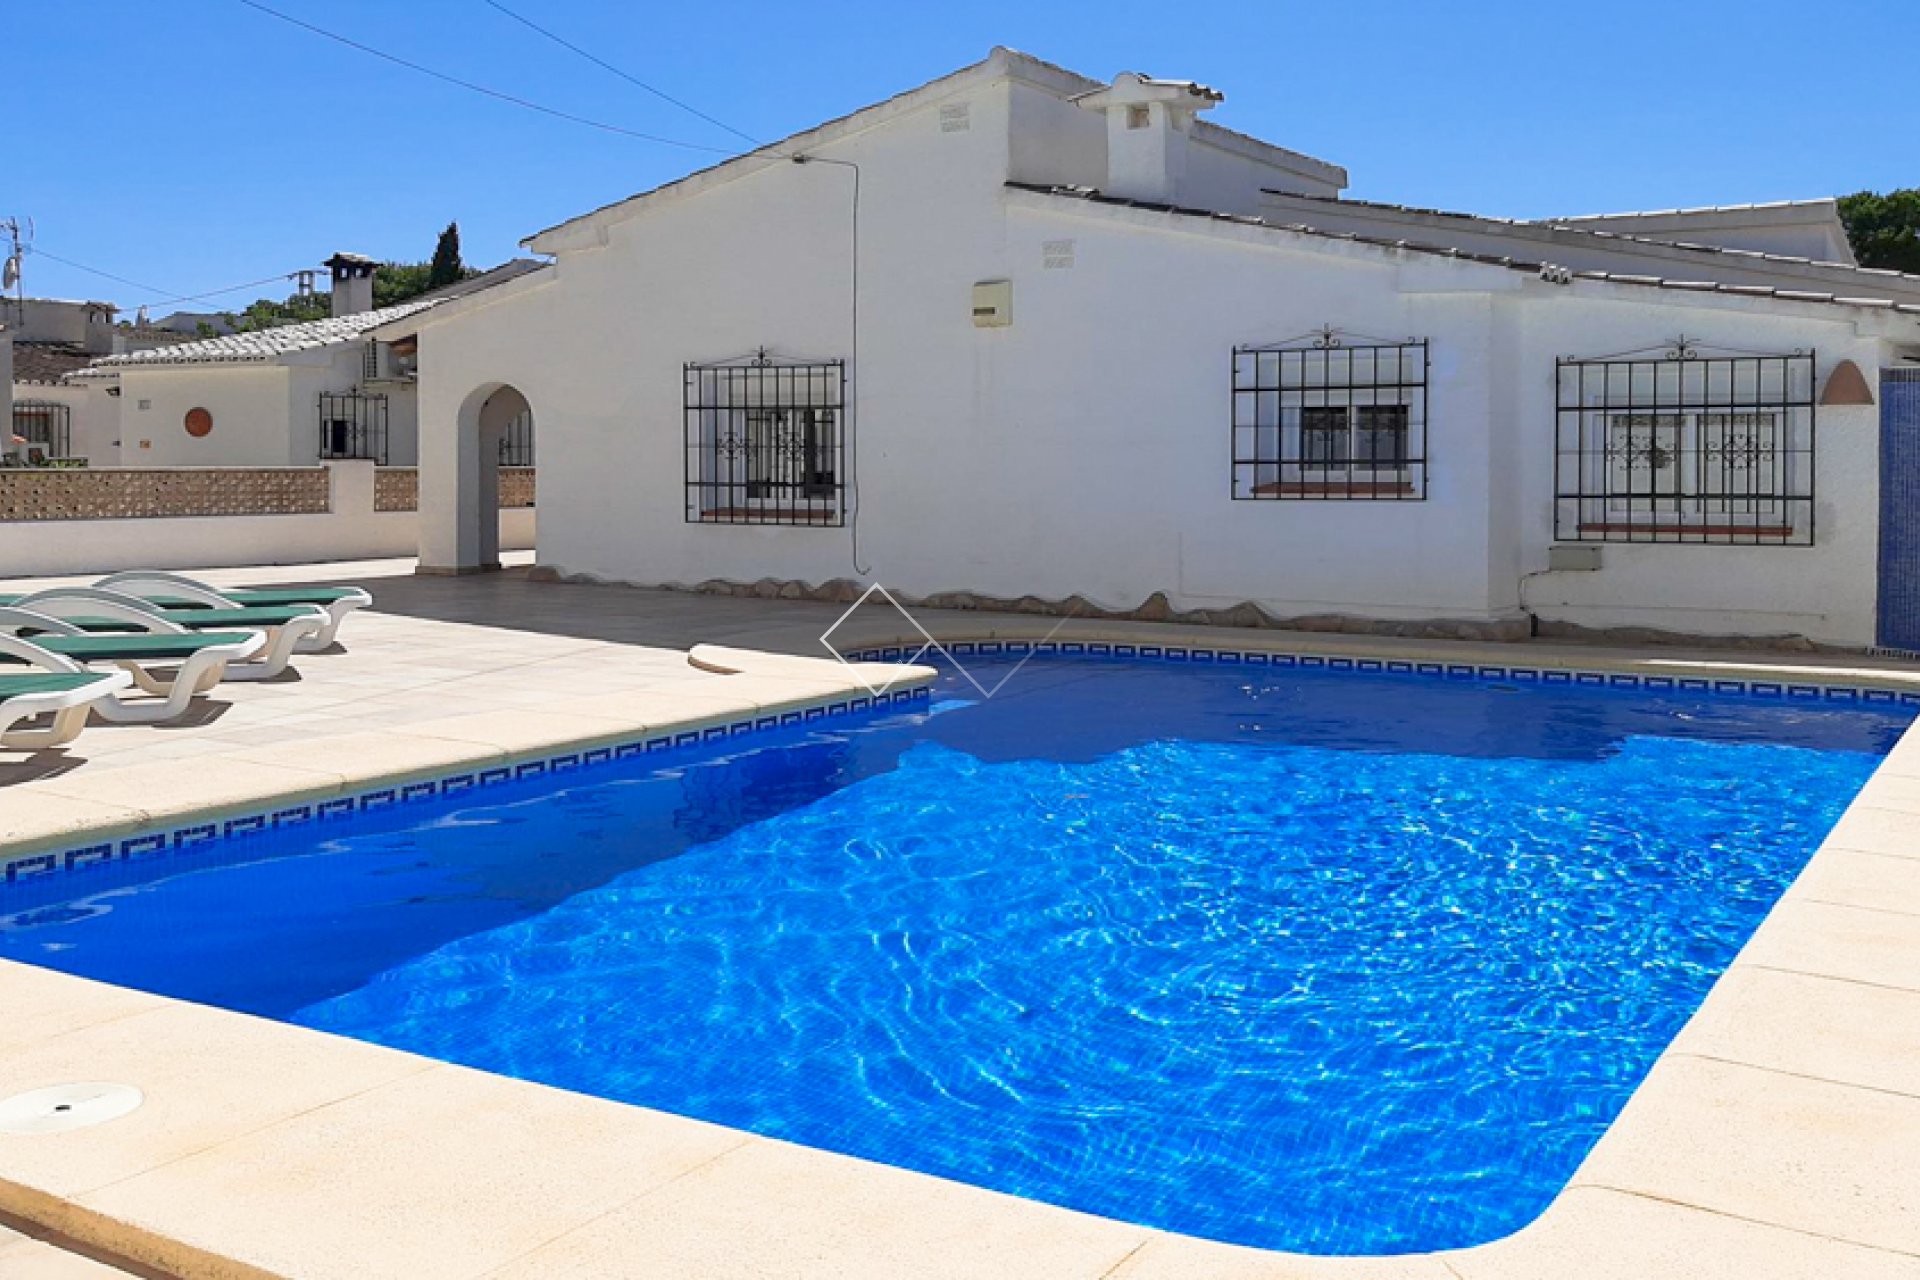 private pool - Villa for sale in Moraira, close to village